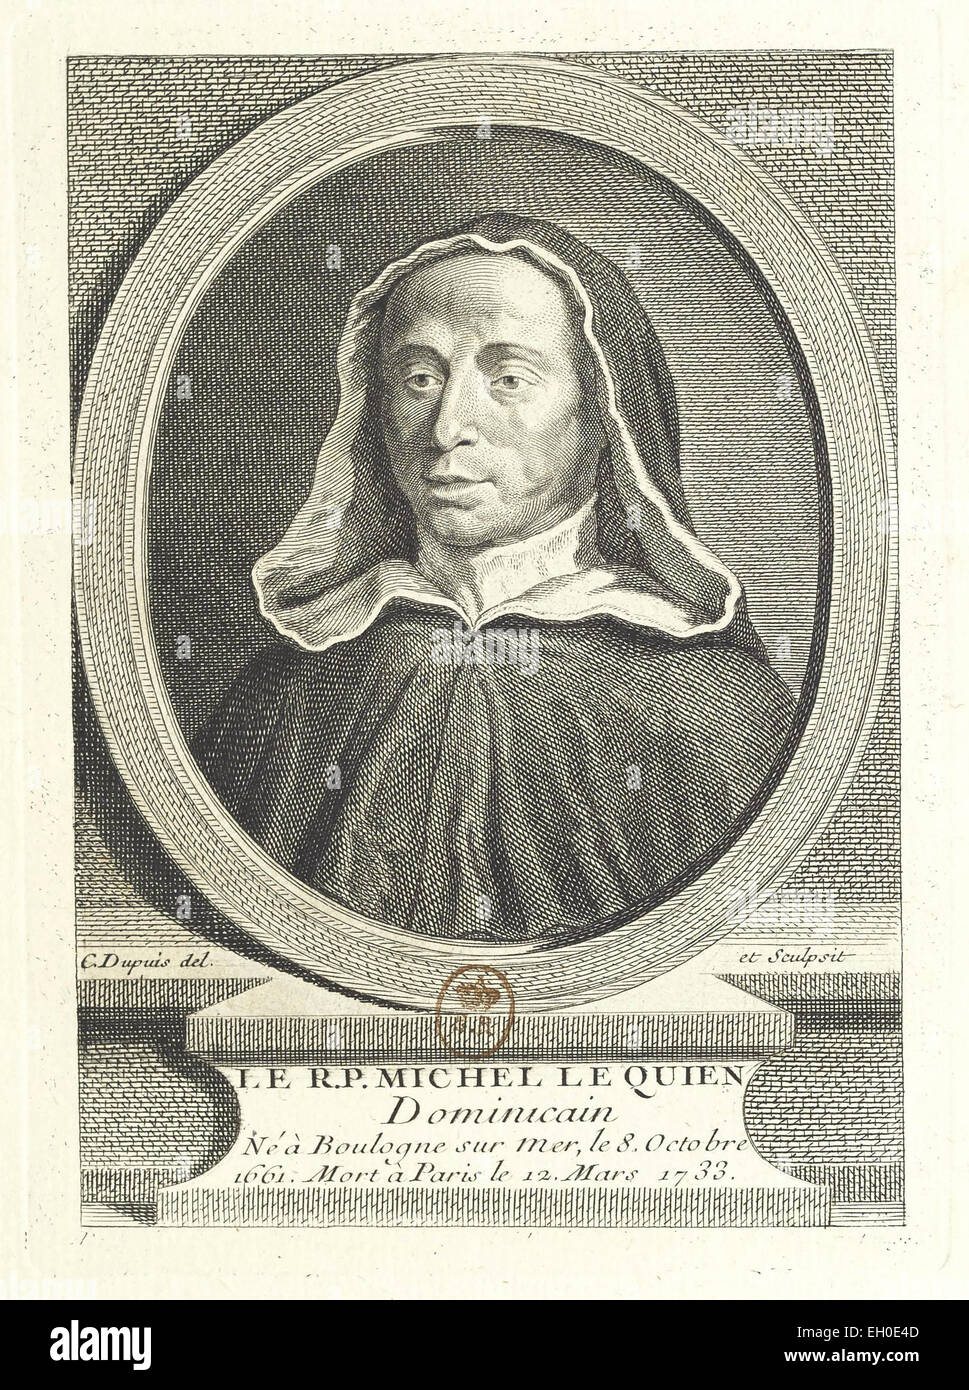 Michel Le Quien (1661 - 1733), francese benedettino, storico e teologo. Foto Stock